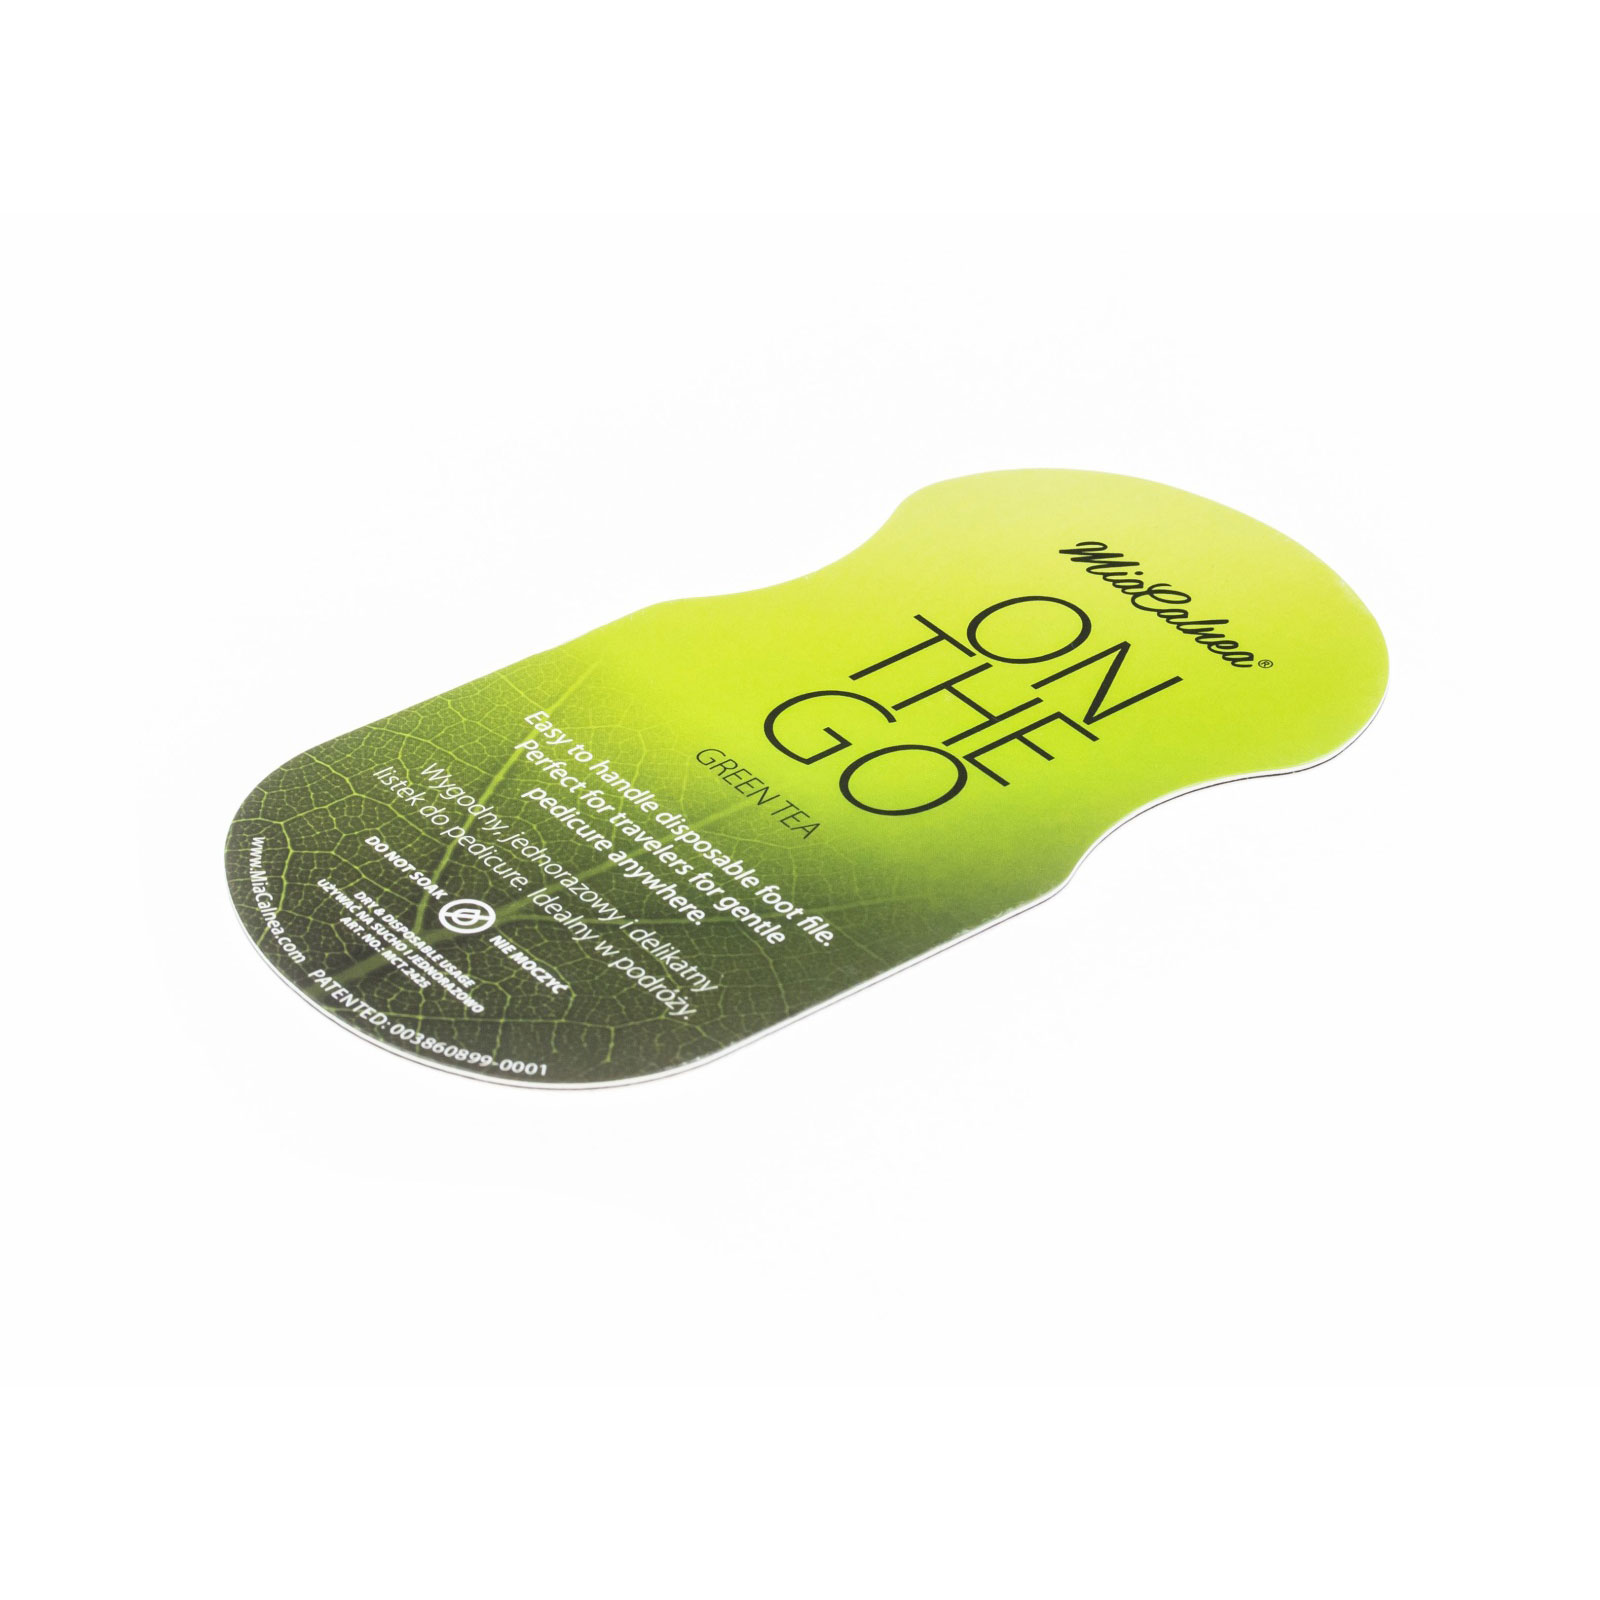 Mia Calnea On-The-Go Green Tea Footfile for single use 10 pack green grit:80 - 6002456 MIA CALNEA FOOT FILES